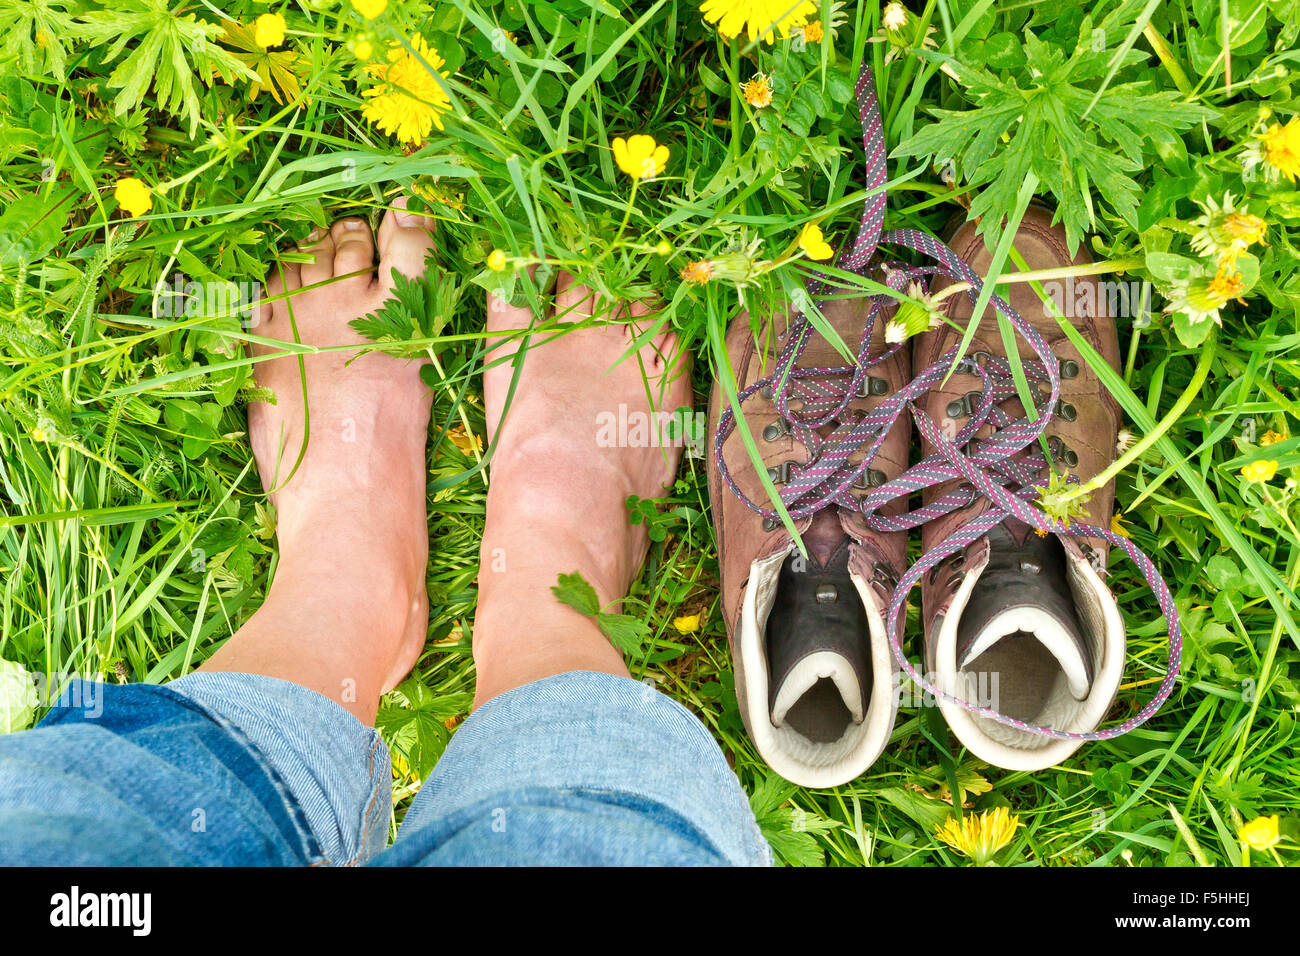 Hombre de pie descalzo en el pasto Foto de stock